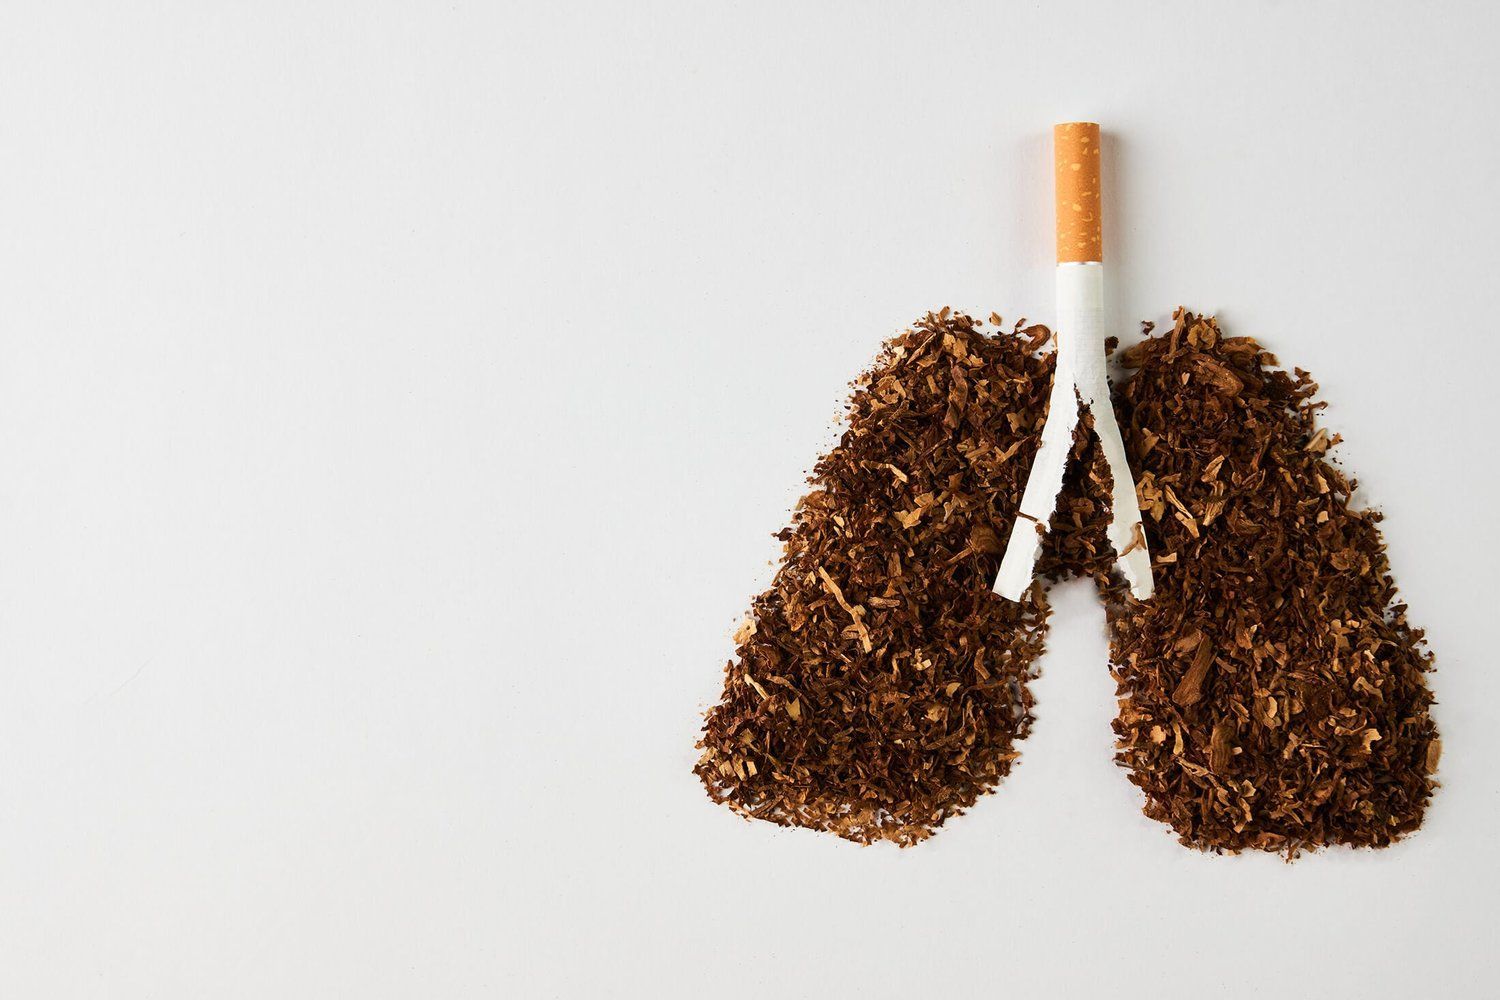 27 जून विशेष : वैज्ञानिकों ने दावा किया था की धूम्रपान से होता है फेफड़ों का कैंसर